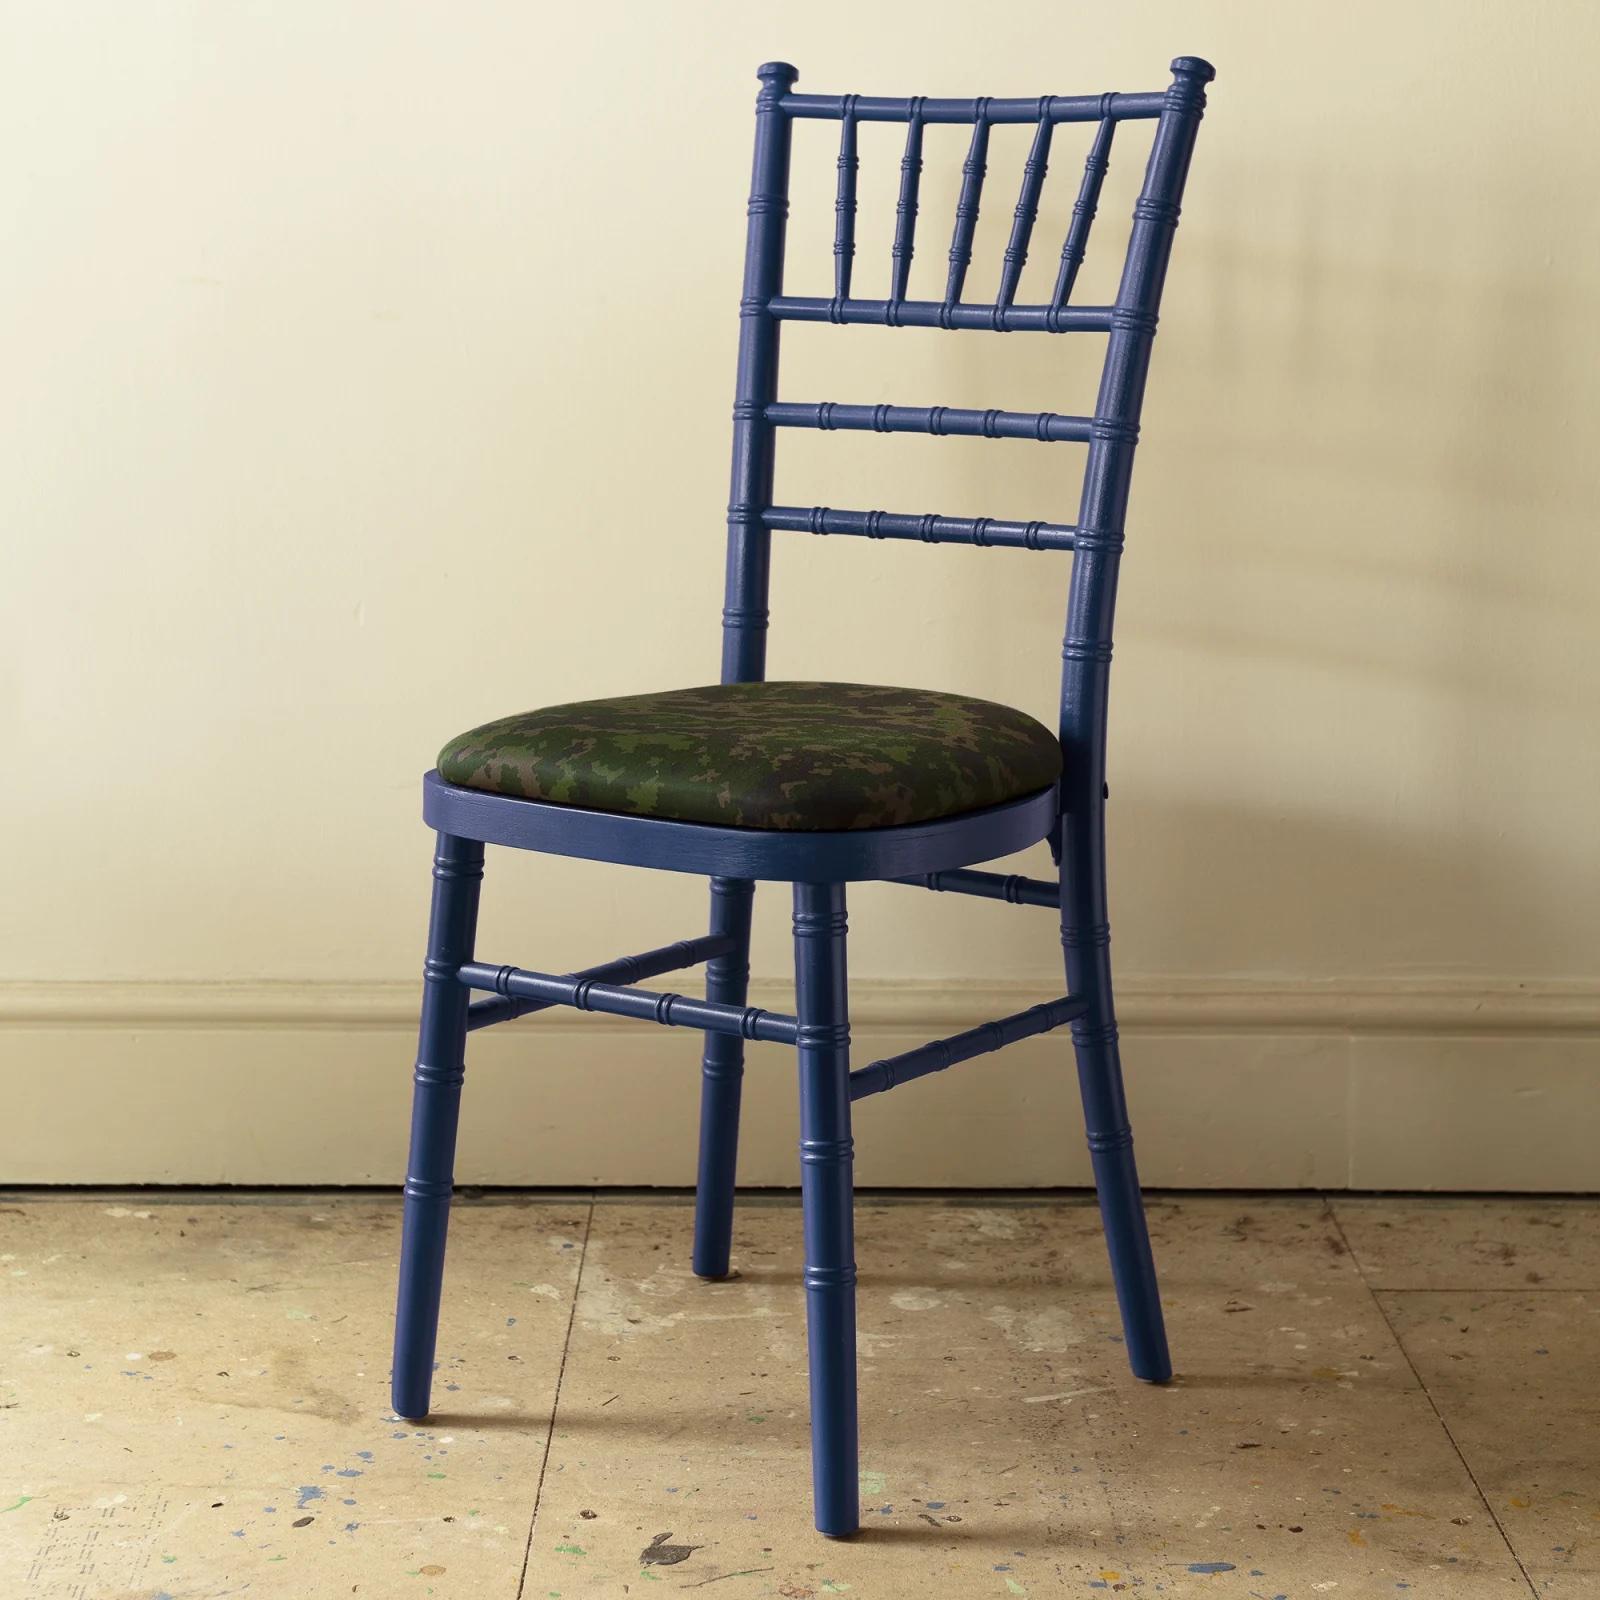 Ein wirklich nützlicher Stuhl, stapelbar, leicht und stabil.
In den drei abgebildeten Farben ab Lager lieferbar. 
Der Preis beinhaltet nicht den Stoff für das Sitzkissen. Wir können einen Stoff vorschlagen oder Sie können Ihren eigenen Stoff